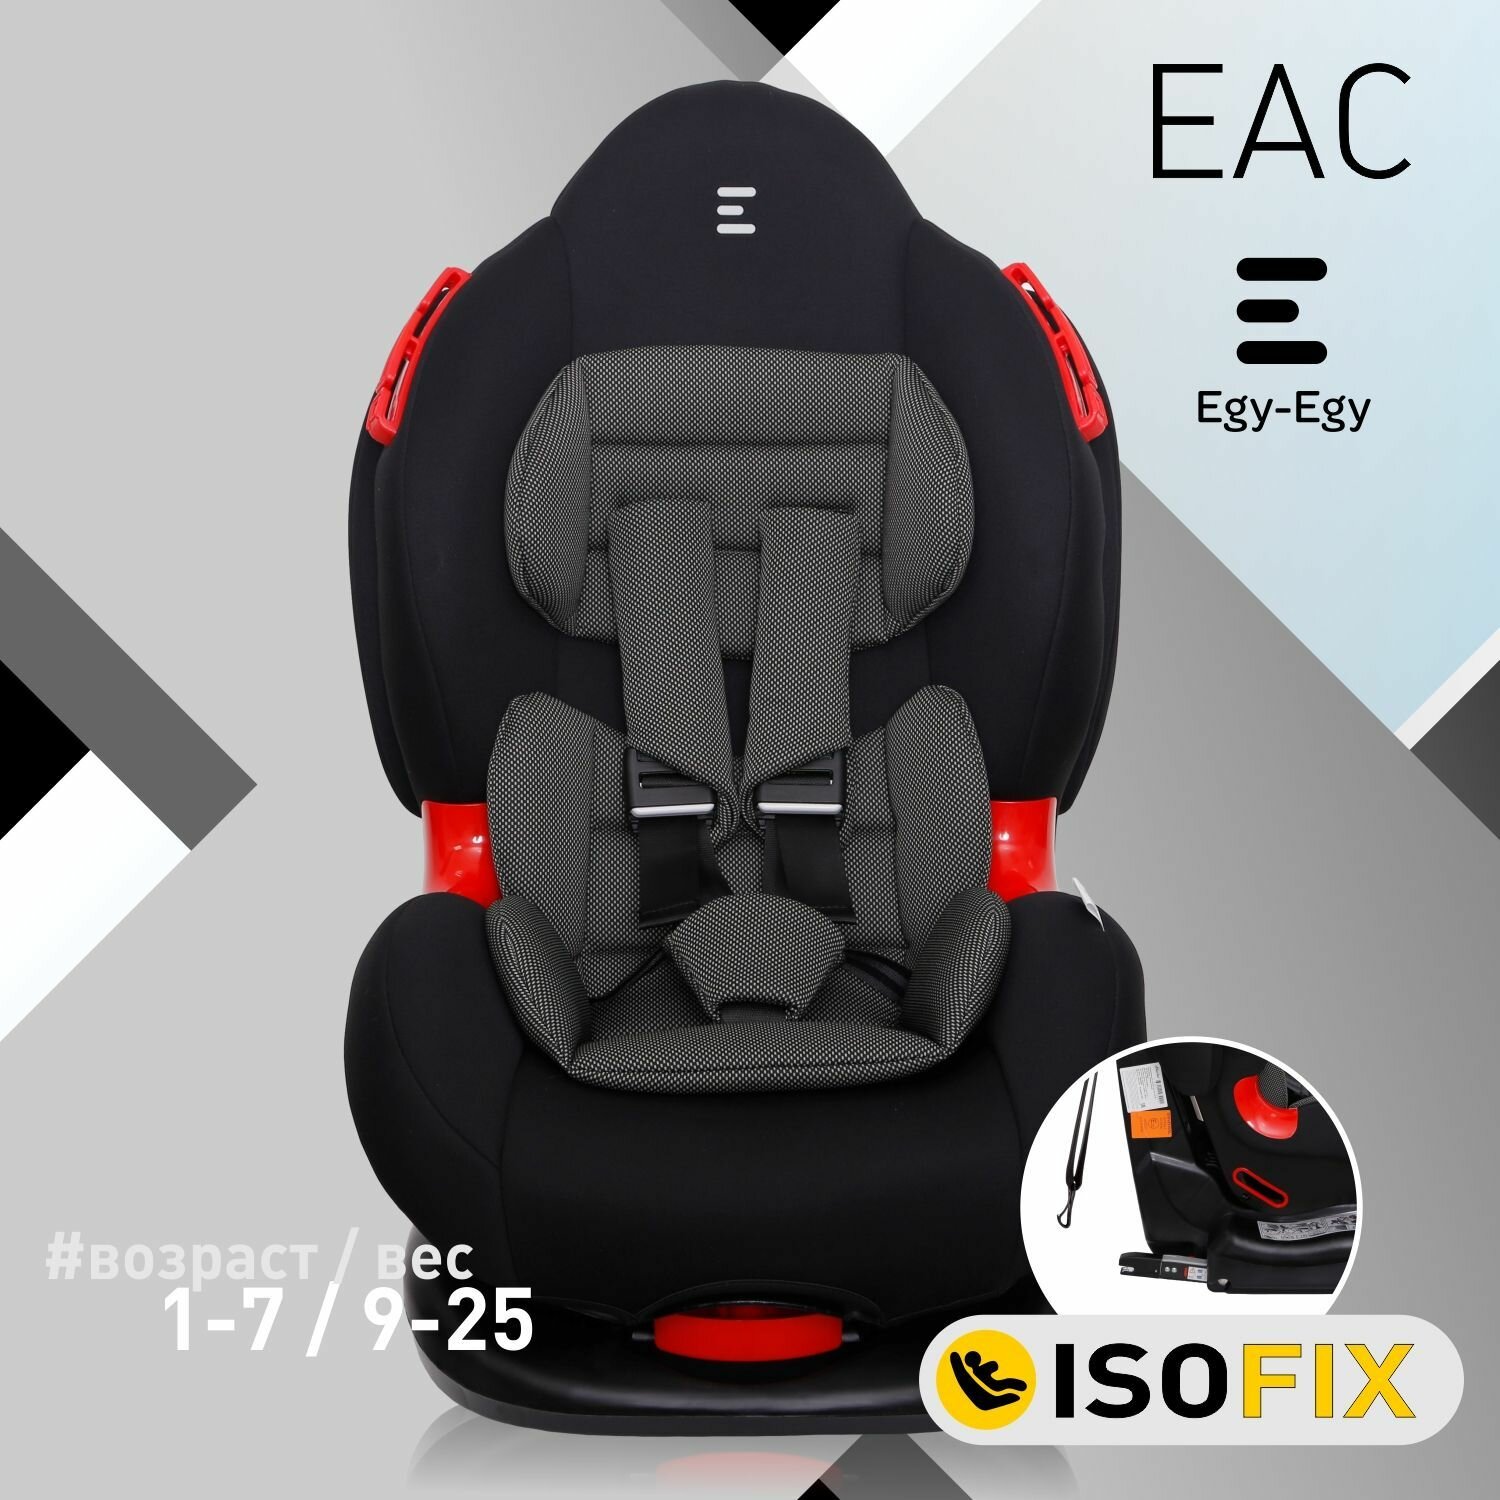 Автокресло детское Еду-Еду KS 525 ISOFIX от 9 до 25 кг, гр. I/II, черный, карбон серый